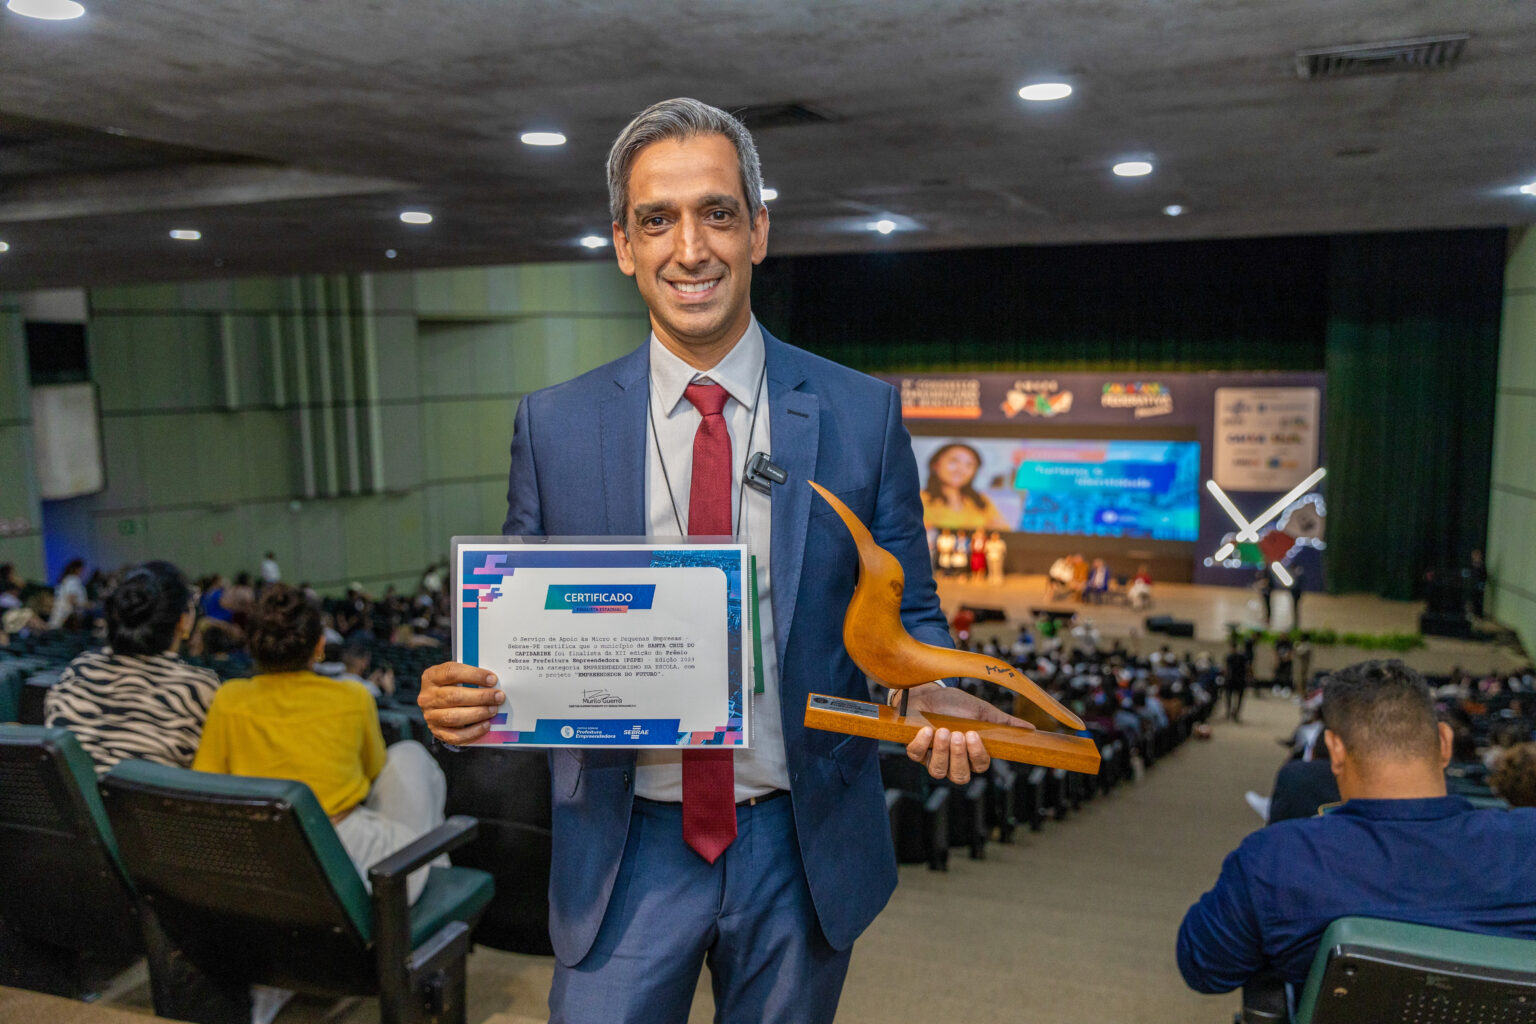  Santa Cruz do Capibaribe vence Prêmio Prefeitura Empreendedora pela promoção do empreendedorismo nas escolas